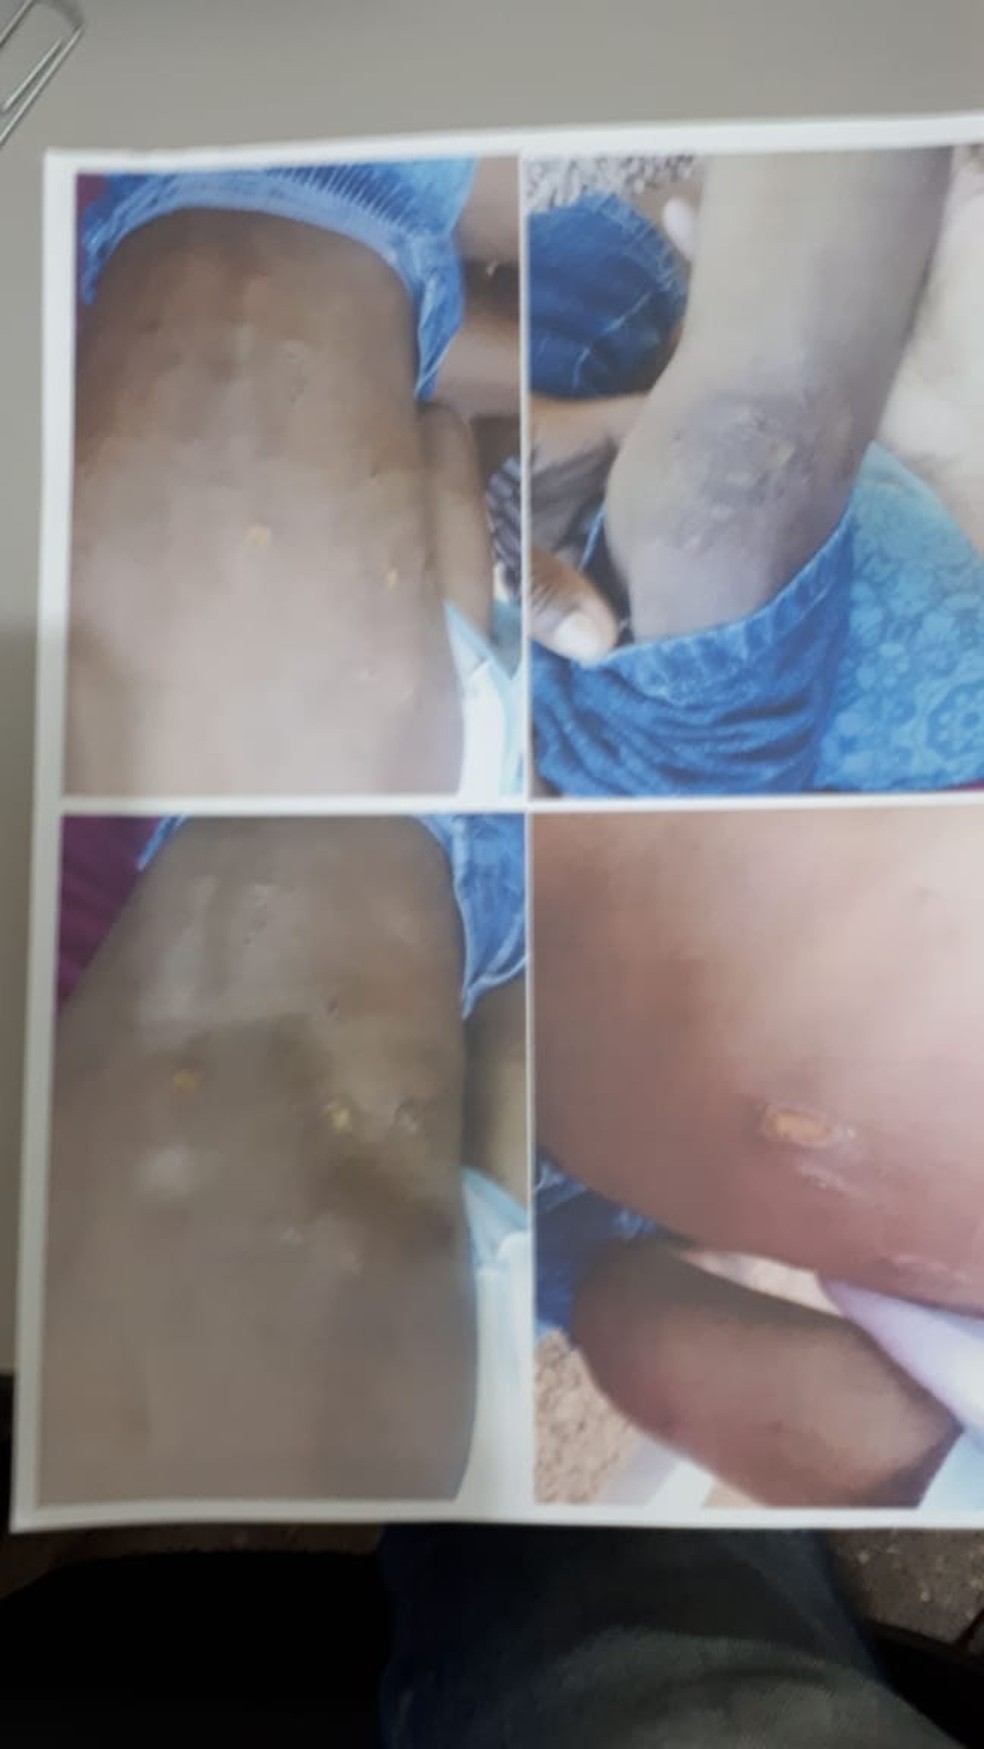 Fotos mostram machucados no corpo do menino de 5 anos torturado em Cuiabá — Foto: Leandro Trindade/TV Centro América